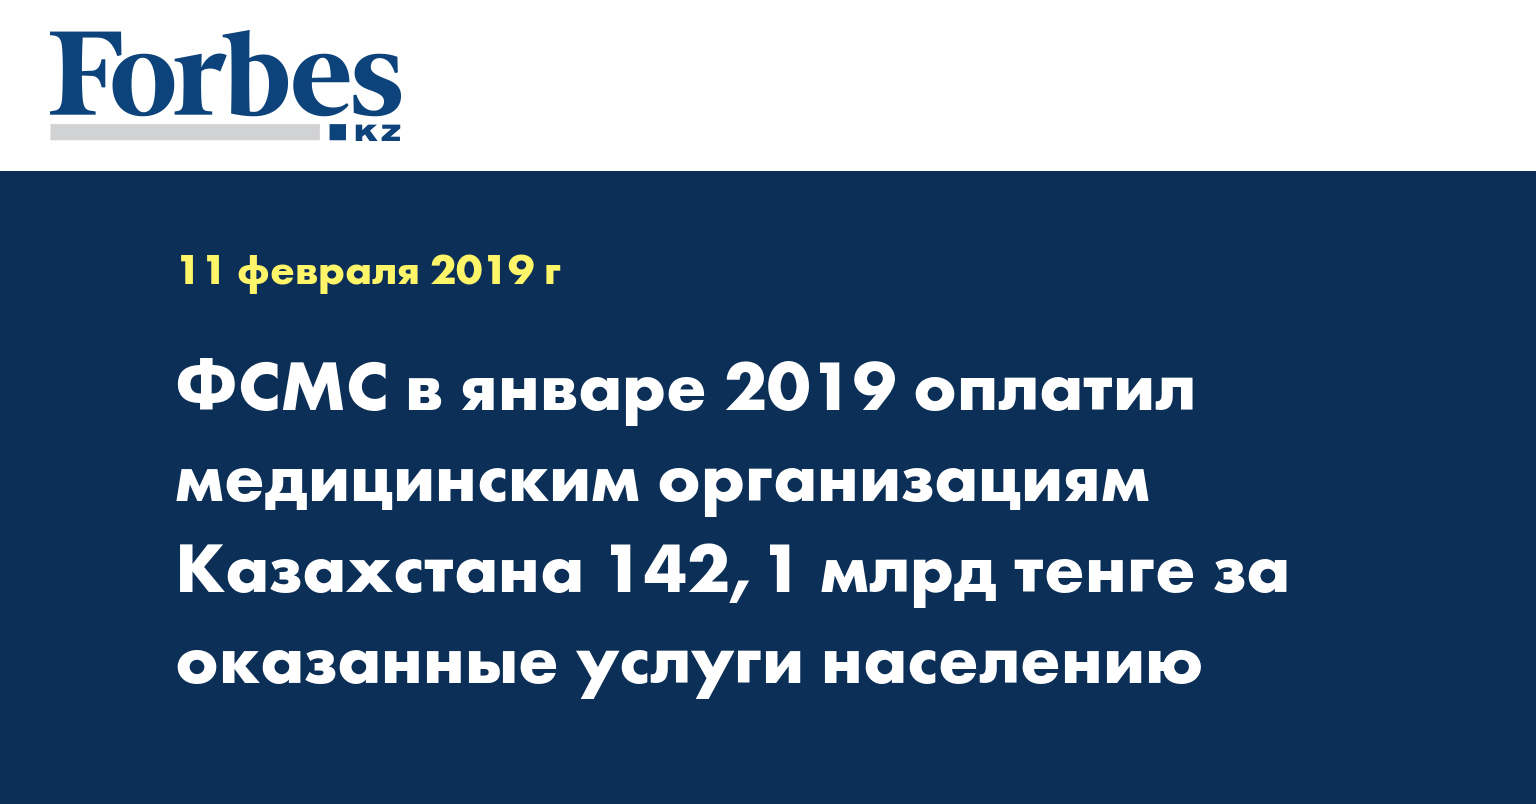 ФСМС в январе 2019 оплатил медицинским организациям Казахстана 142,1 млрд тенге за оказанные услуги населению